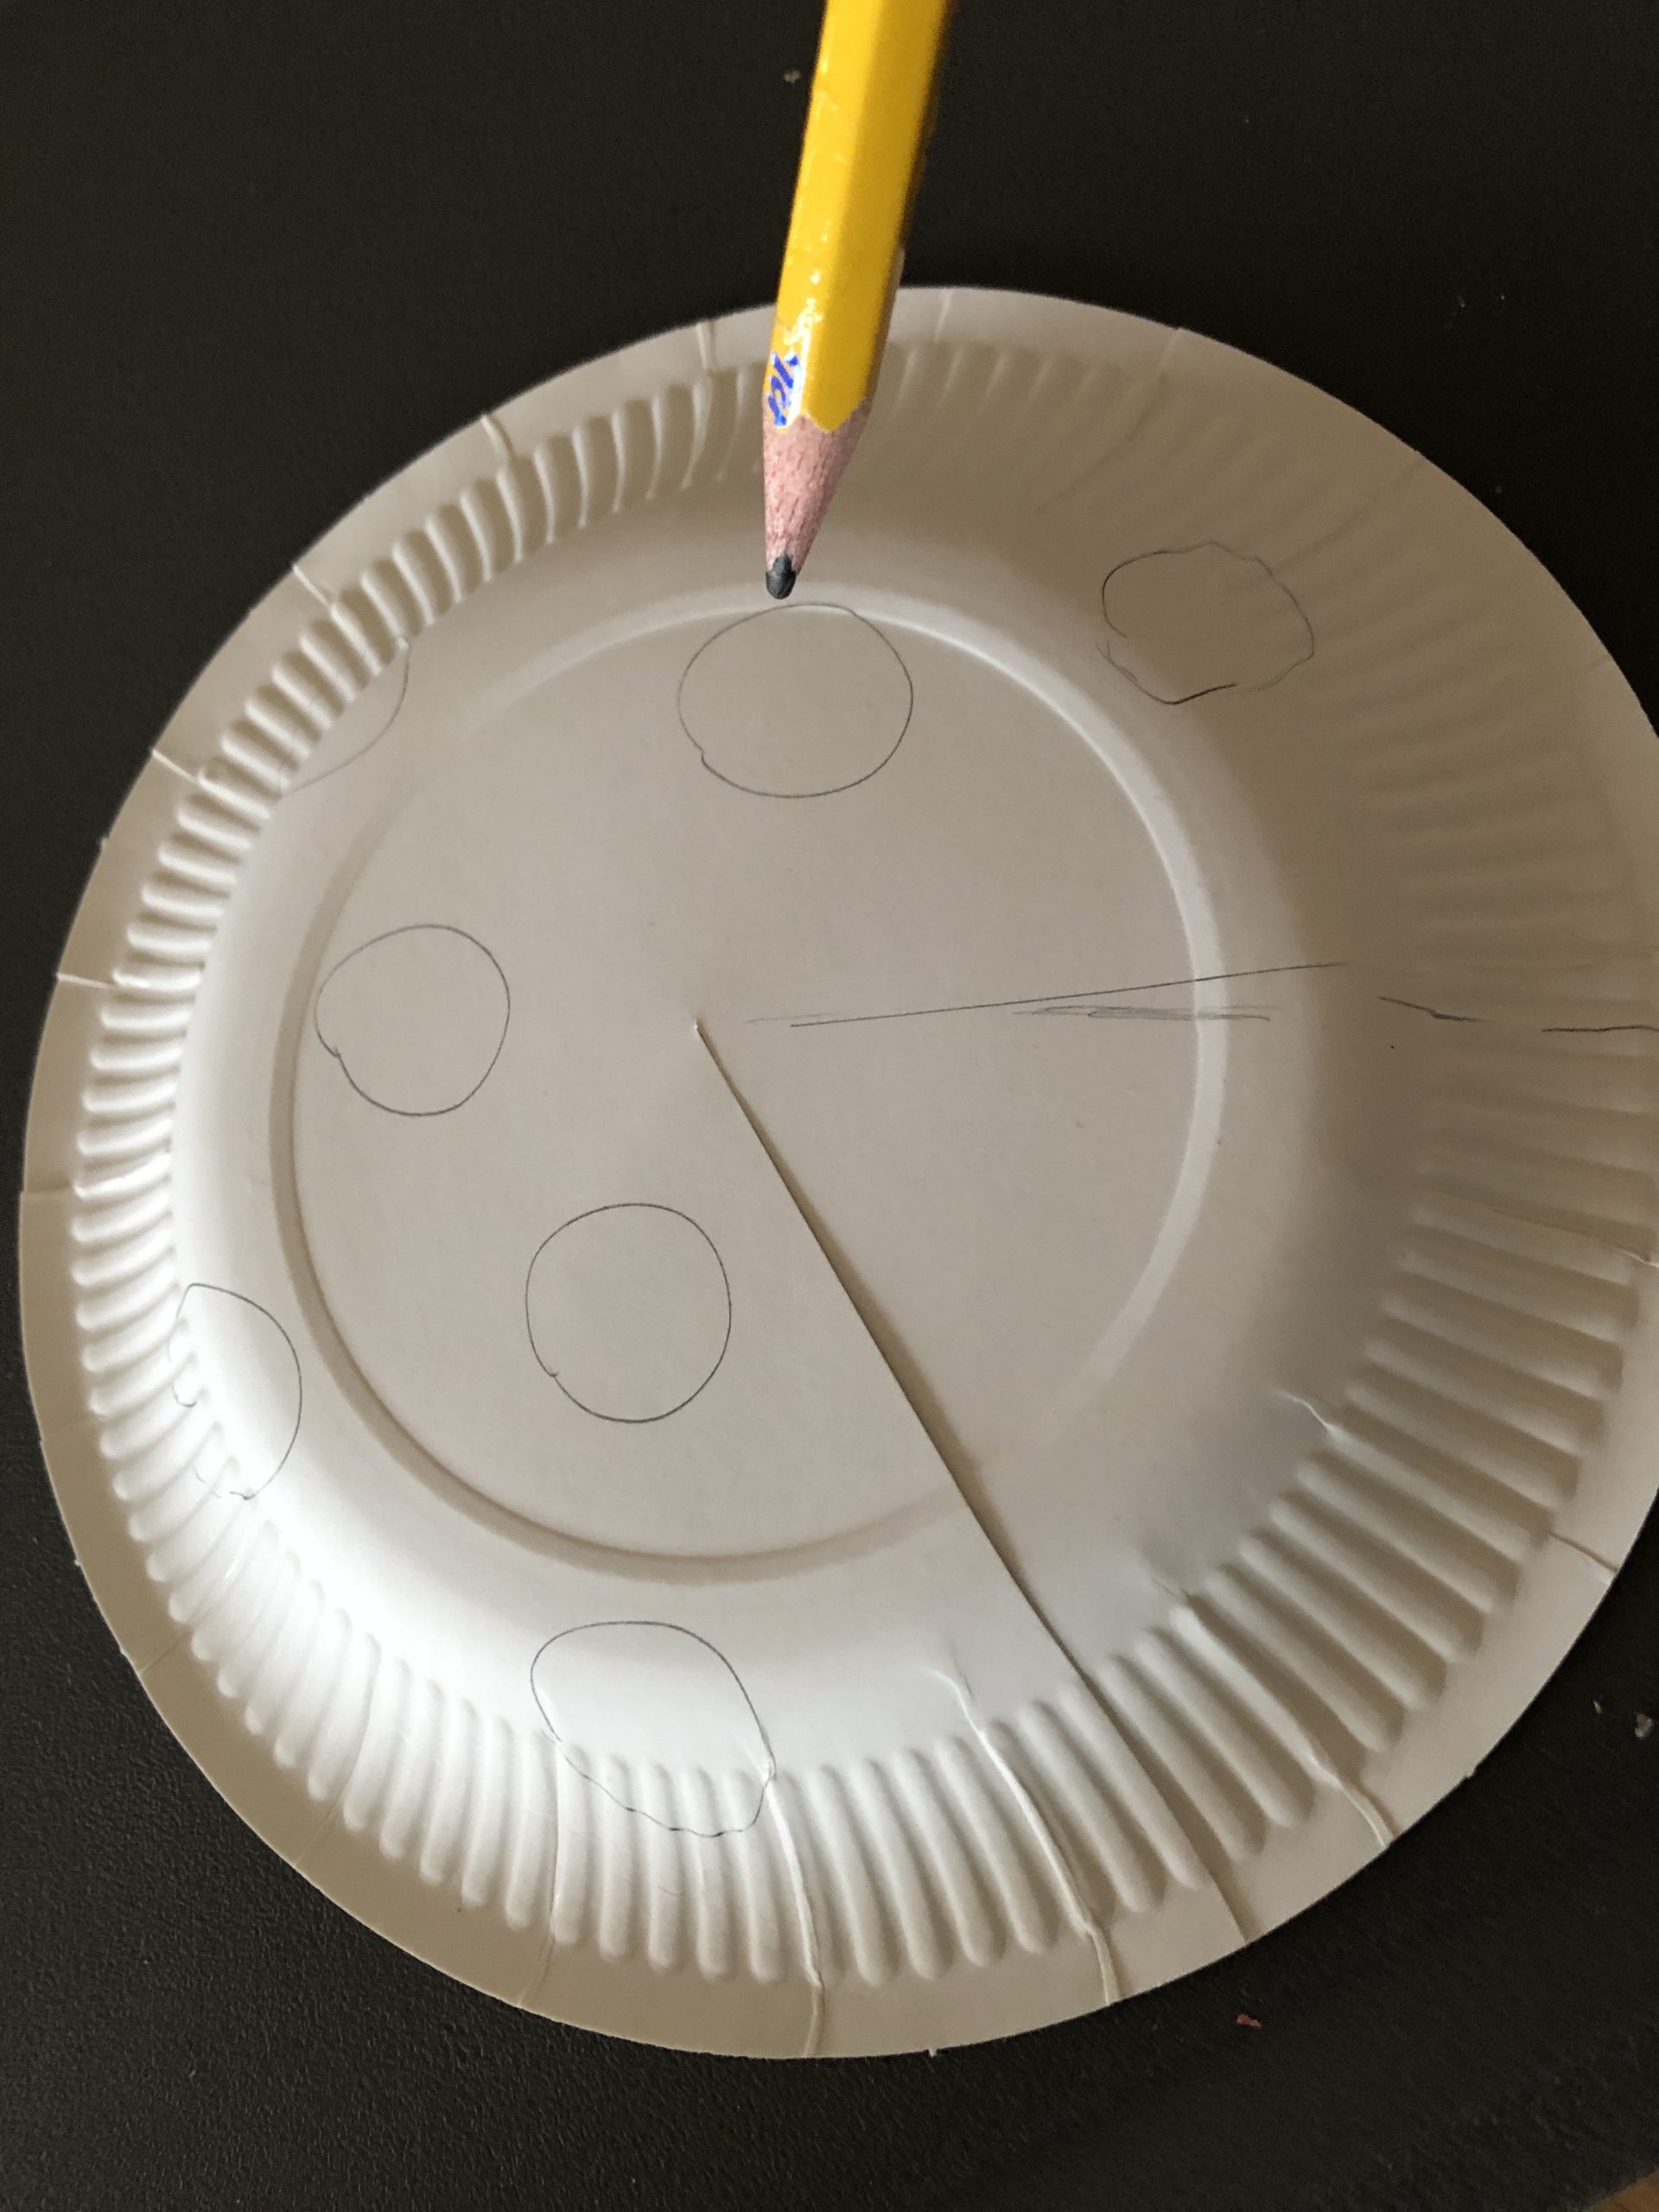 Bild zum Schritt 12 für das Bastel- und DIY-Abenteuer für Kinder: 'Dann zeichnet ihr viele kleine Kreise auf und schneidet diese...'